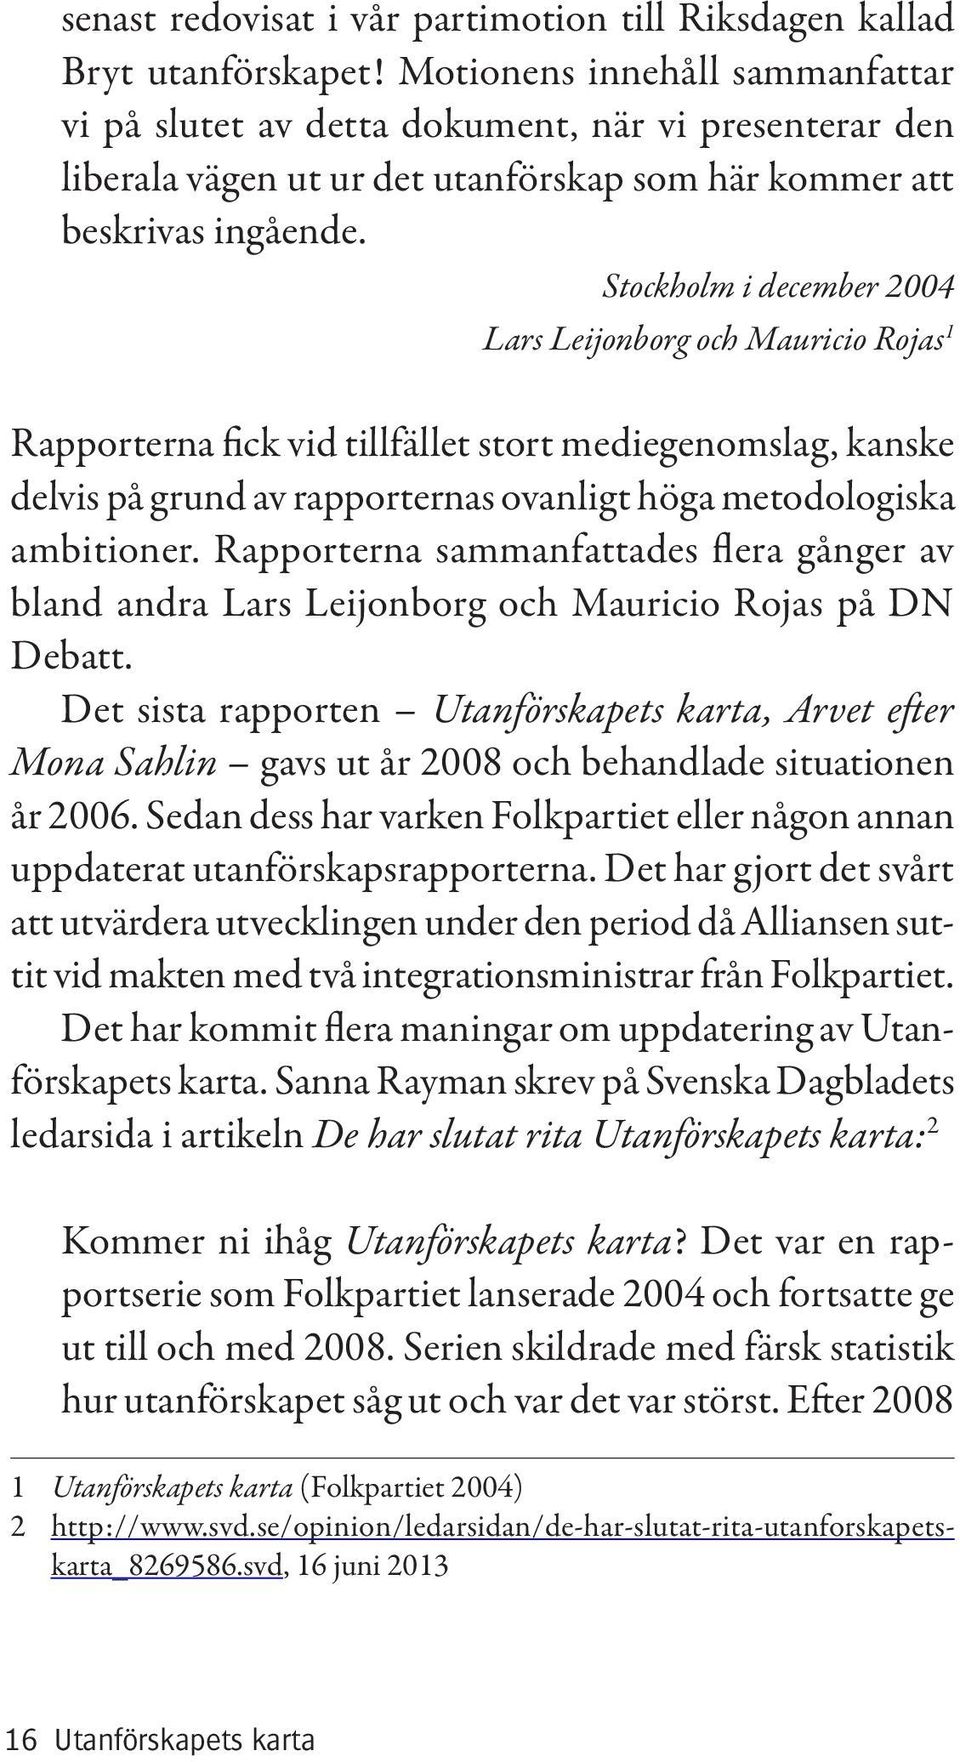 Stockholm i december 2004 Lars Leijonborg och Mauricio Rojas 1 Rapporterna fick vid tillfället stort mediegenomslag, kanske delvis på grund av rapporternas ovanligt höga metodologiska ambitioner.